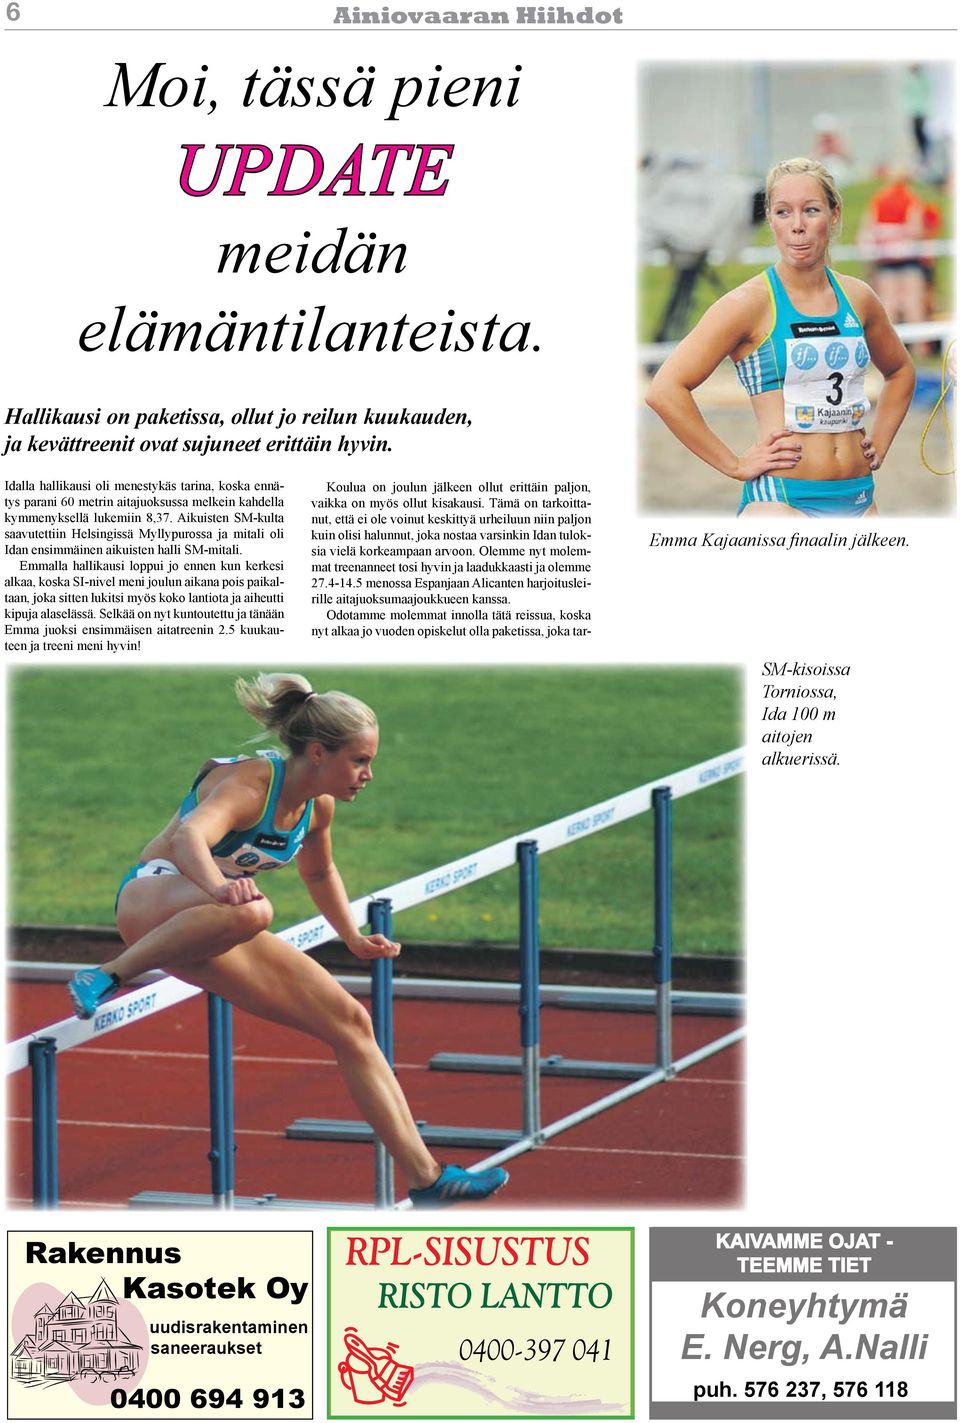 Aikuisten SM-kulta saavutettiin Helsingissä Myllypurossa ja mitali oli Idan ensimmäinen aikuisten halli SM-mitali.